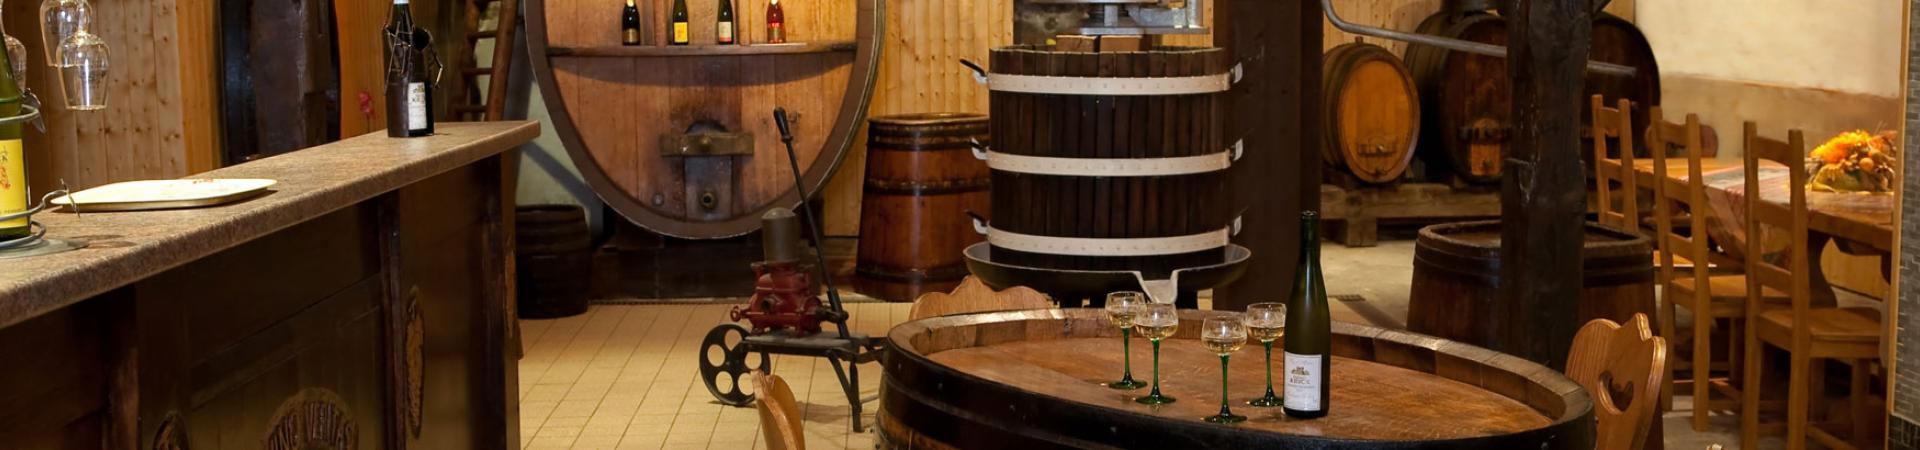 Dégustations vins d'Alsace, évènements oenotouristiques